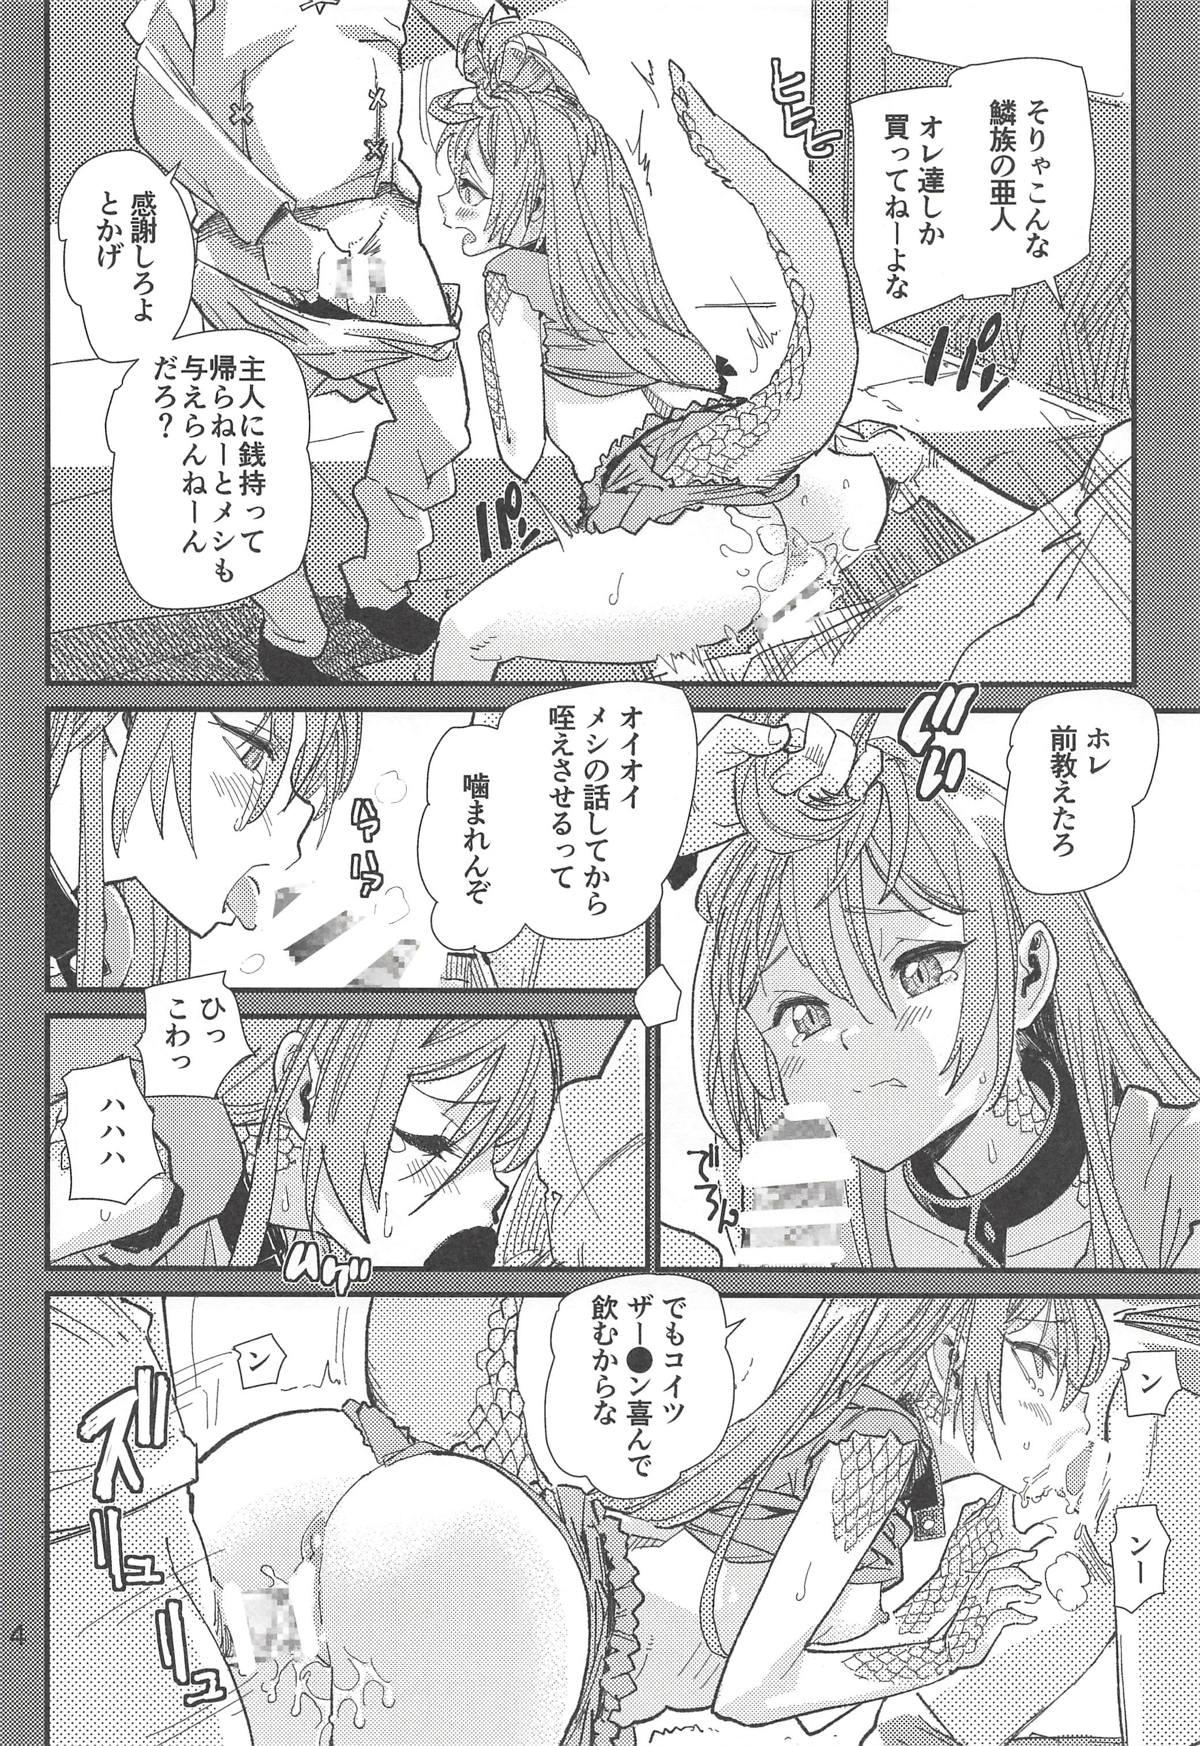 Milf Sex Tokage no Shippo no Sayokyoku - Death march kara hajimaru isekai kyousoukyoku Bra - Page 3